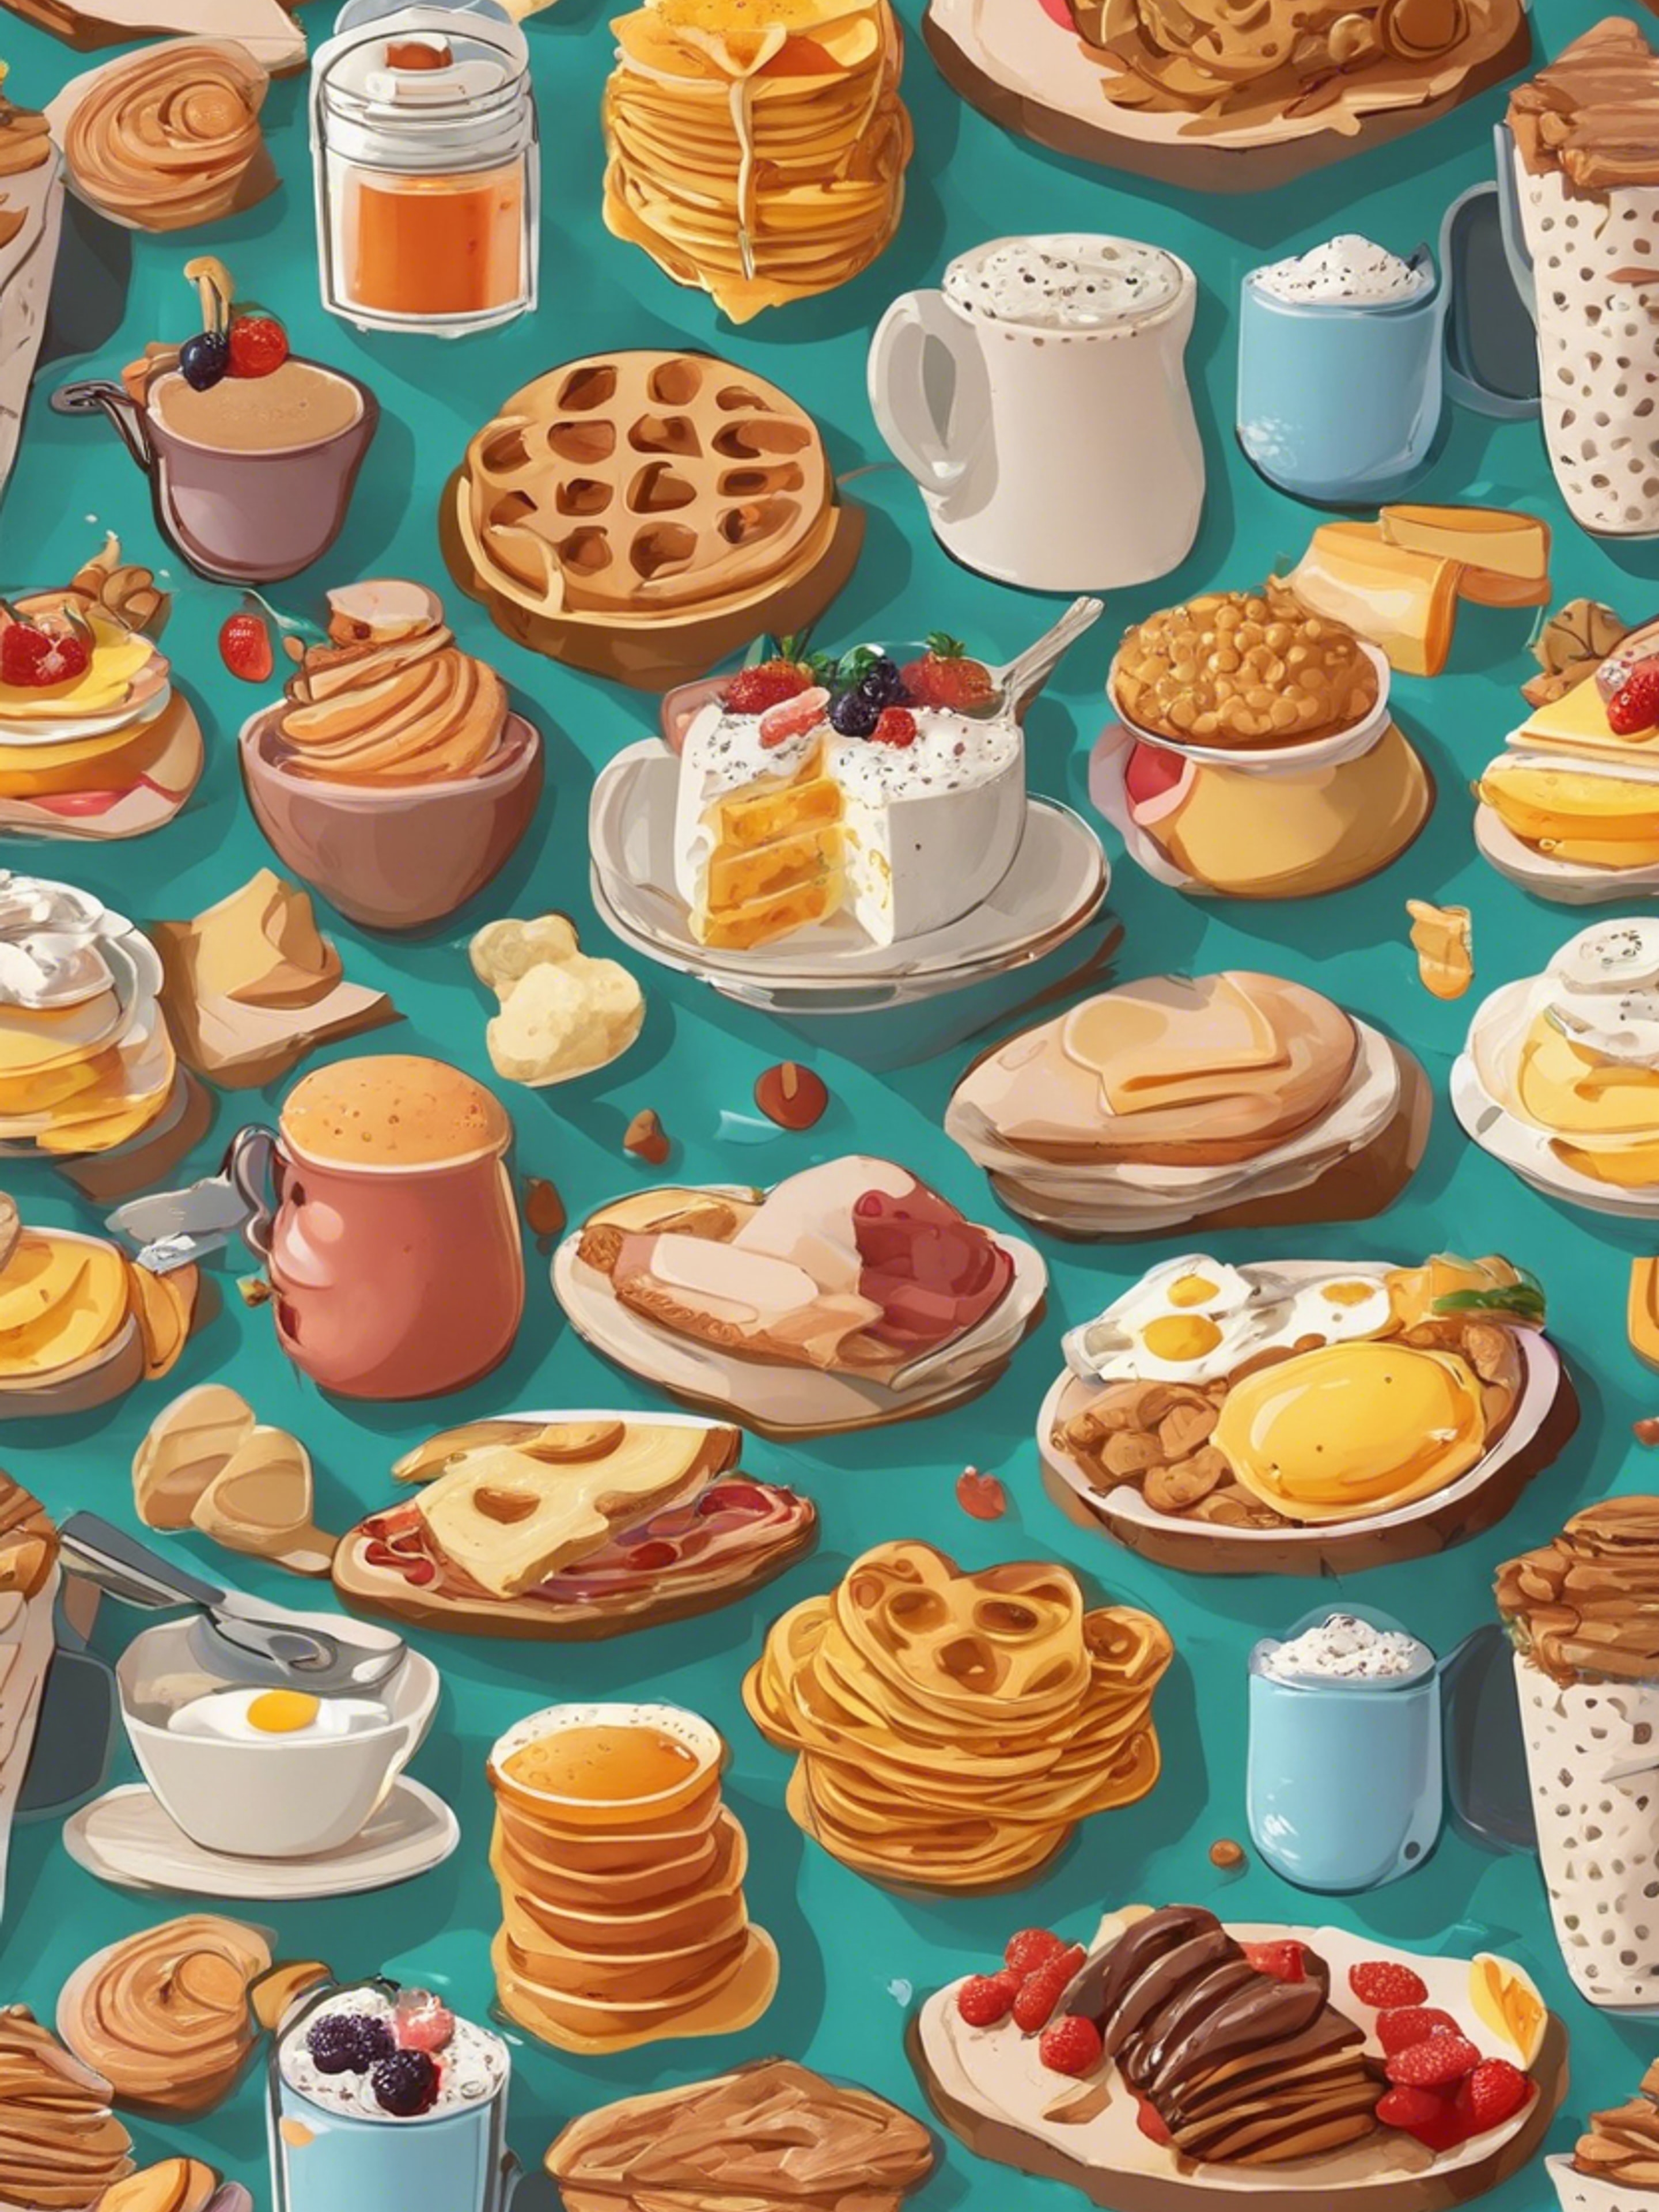 Cartoonish breakfast food items in an appealing, kid-friendly pattern. Hintergrund[fa493d8b255444e69f8d]